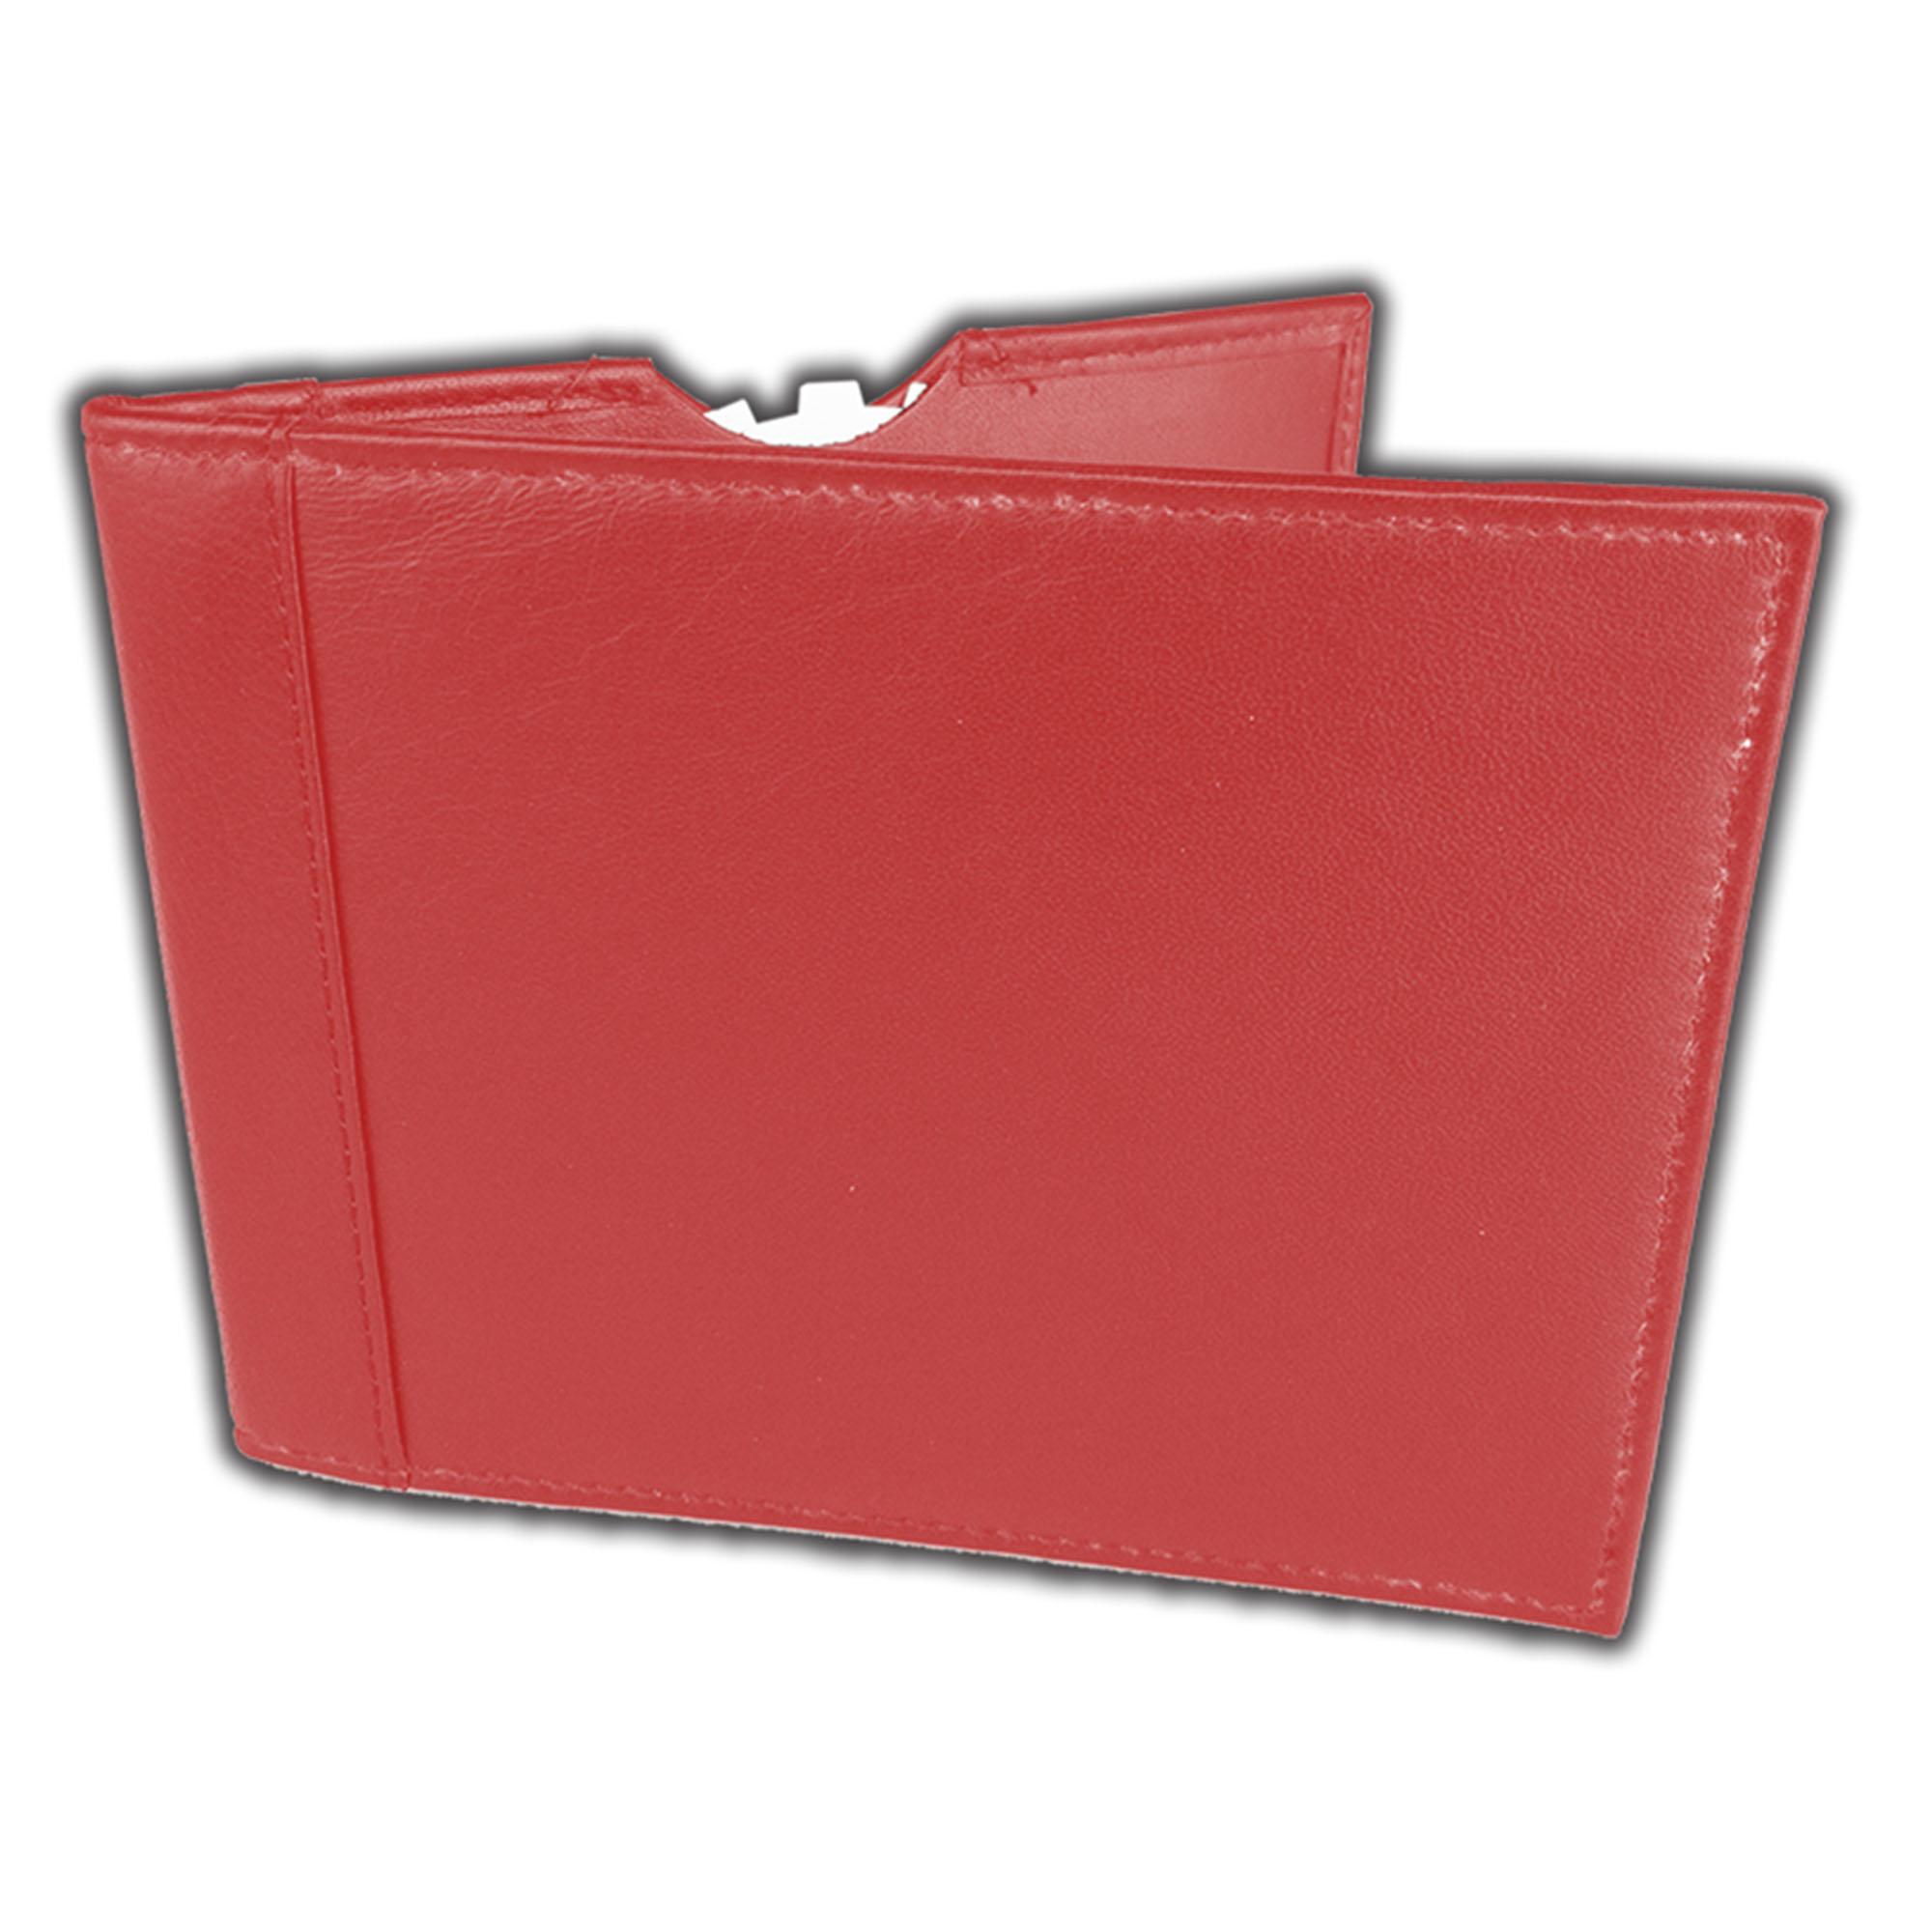 blue badge wallet holder Red